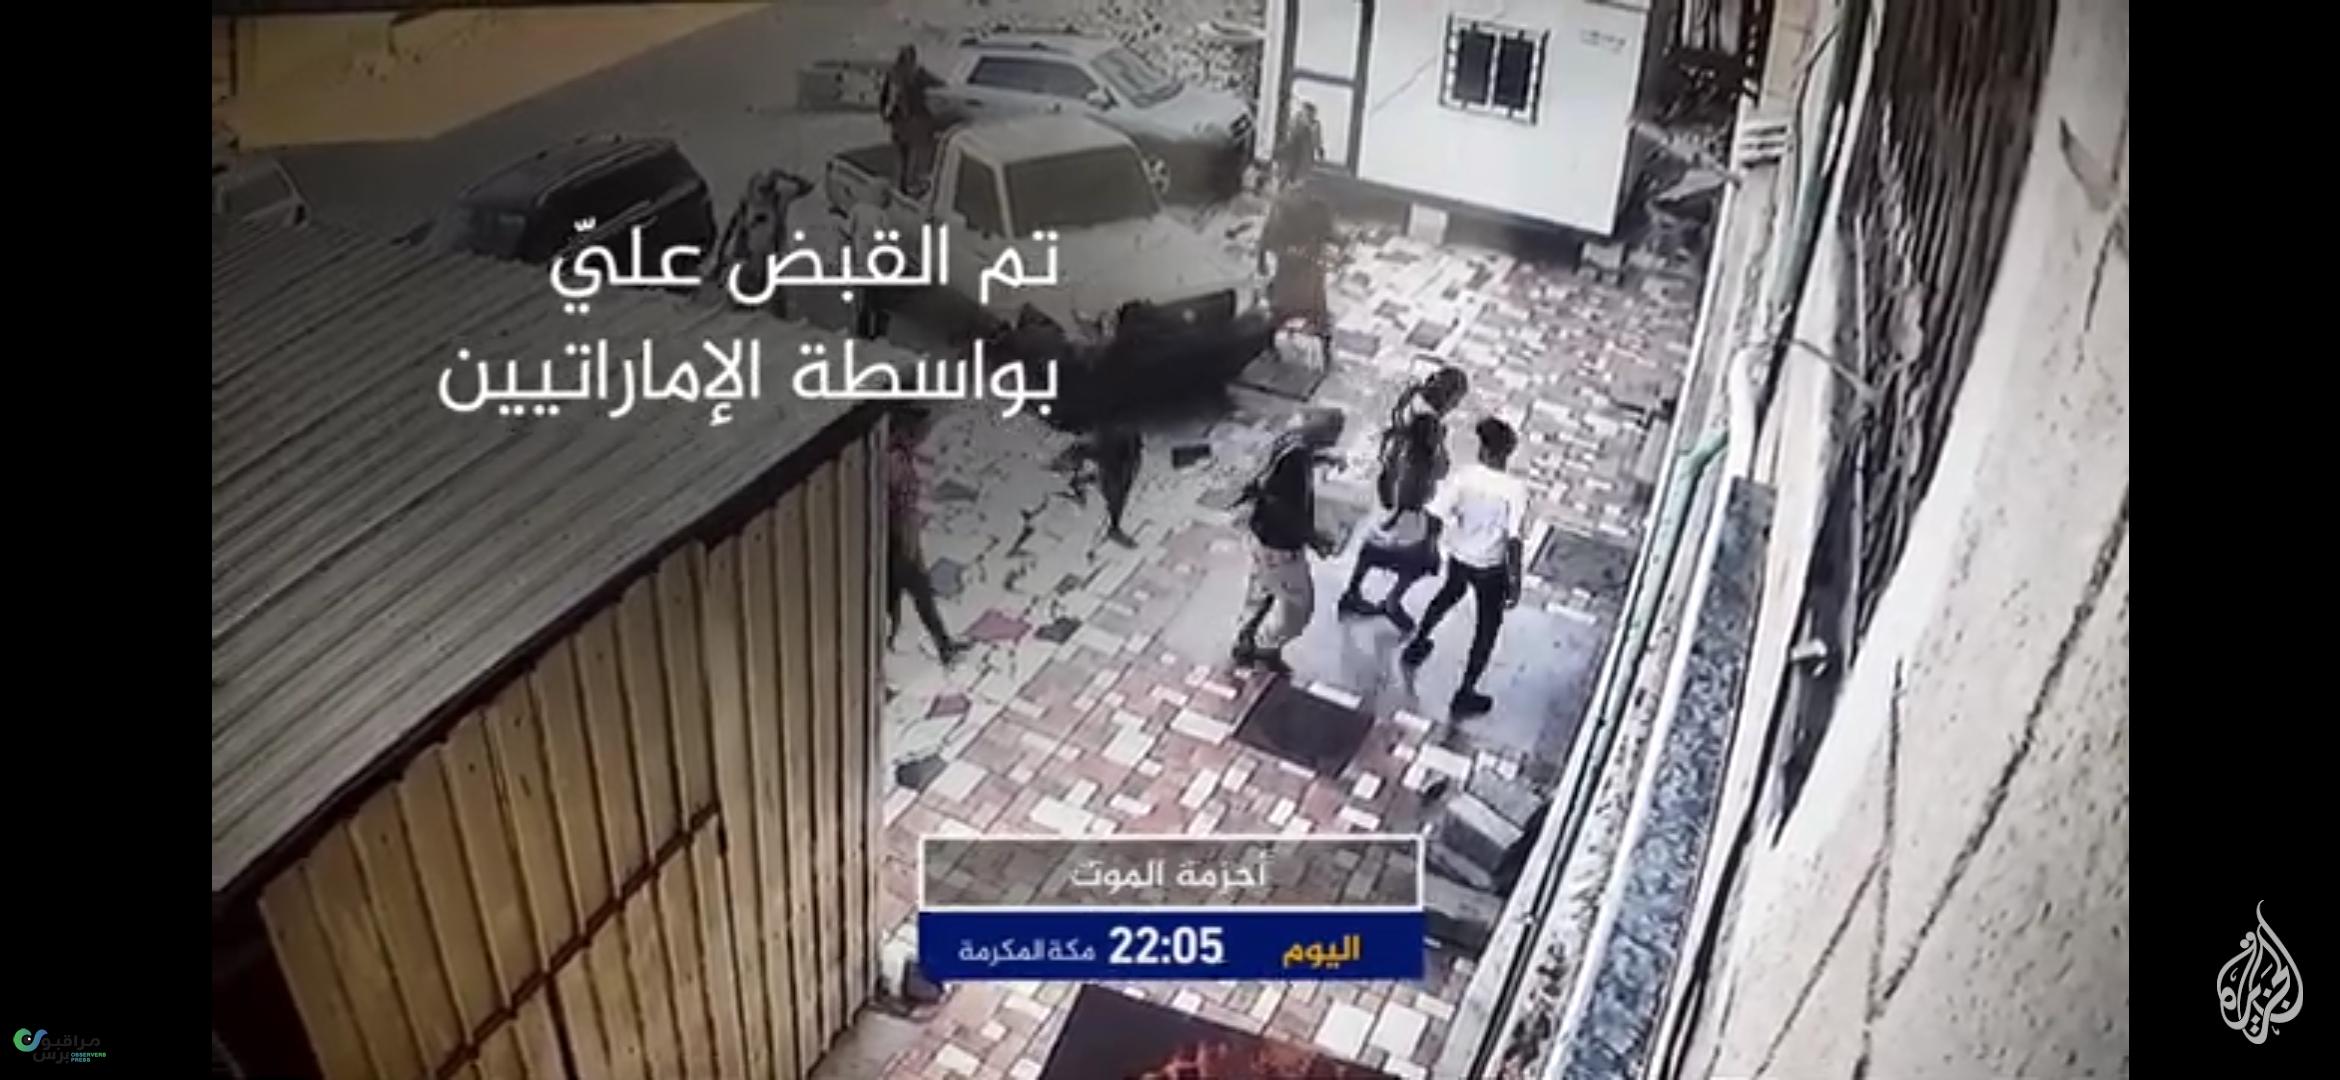 فيلم وثائقي جديد يفضح جرائم أحزمة الموت الإماراتية في عدن